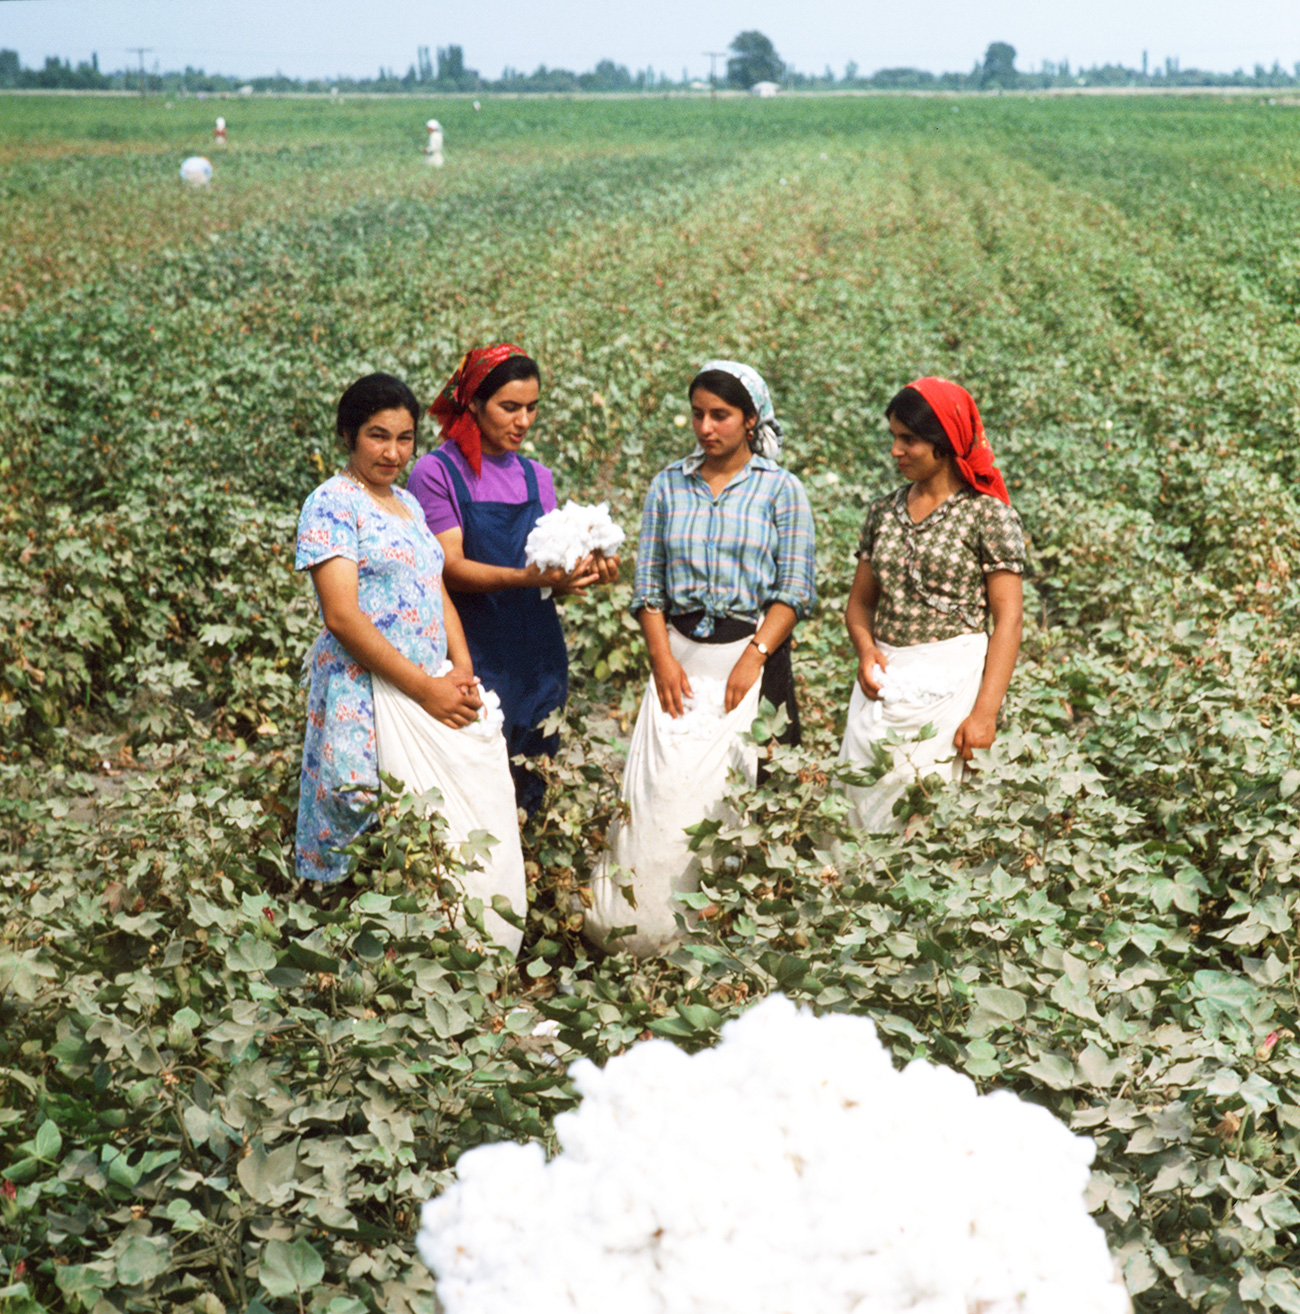 公式な統計によれば、1980年代初頭、ソ連は綿の収穫量で世界第1位であった。／／アゼルバイジャン・ソビエト社会主義共和国、1979年